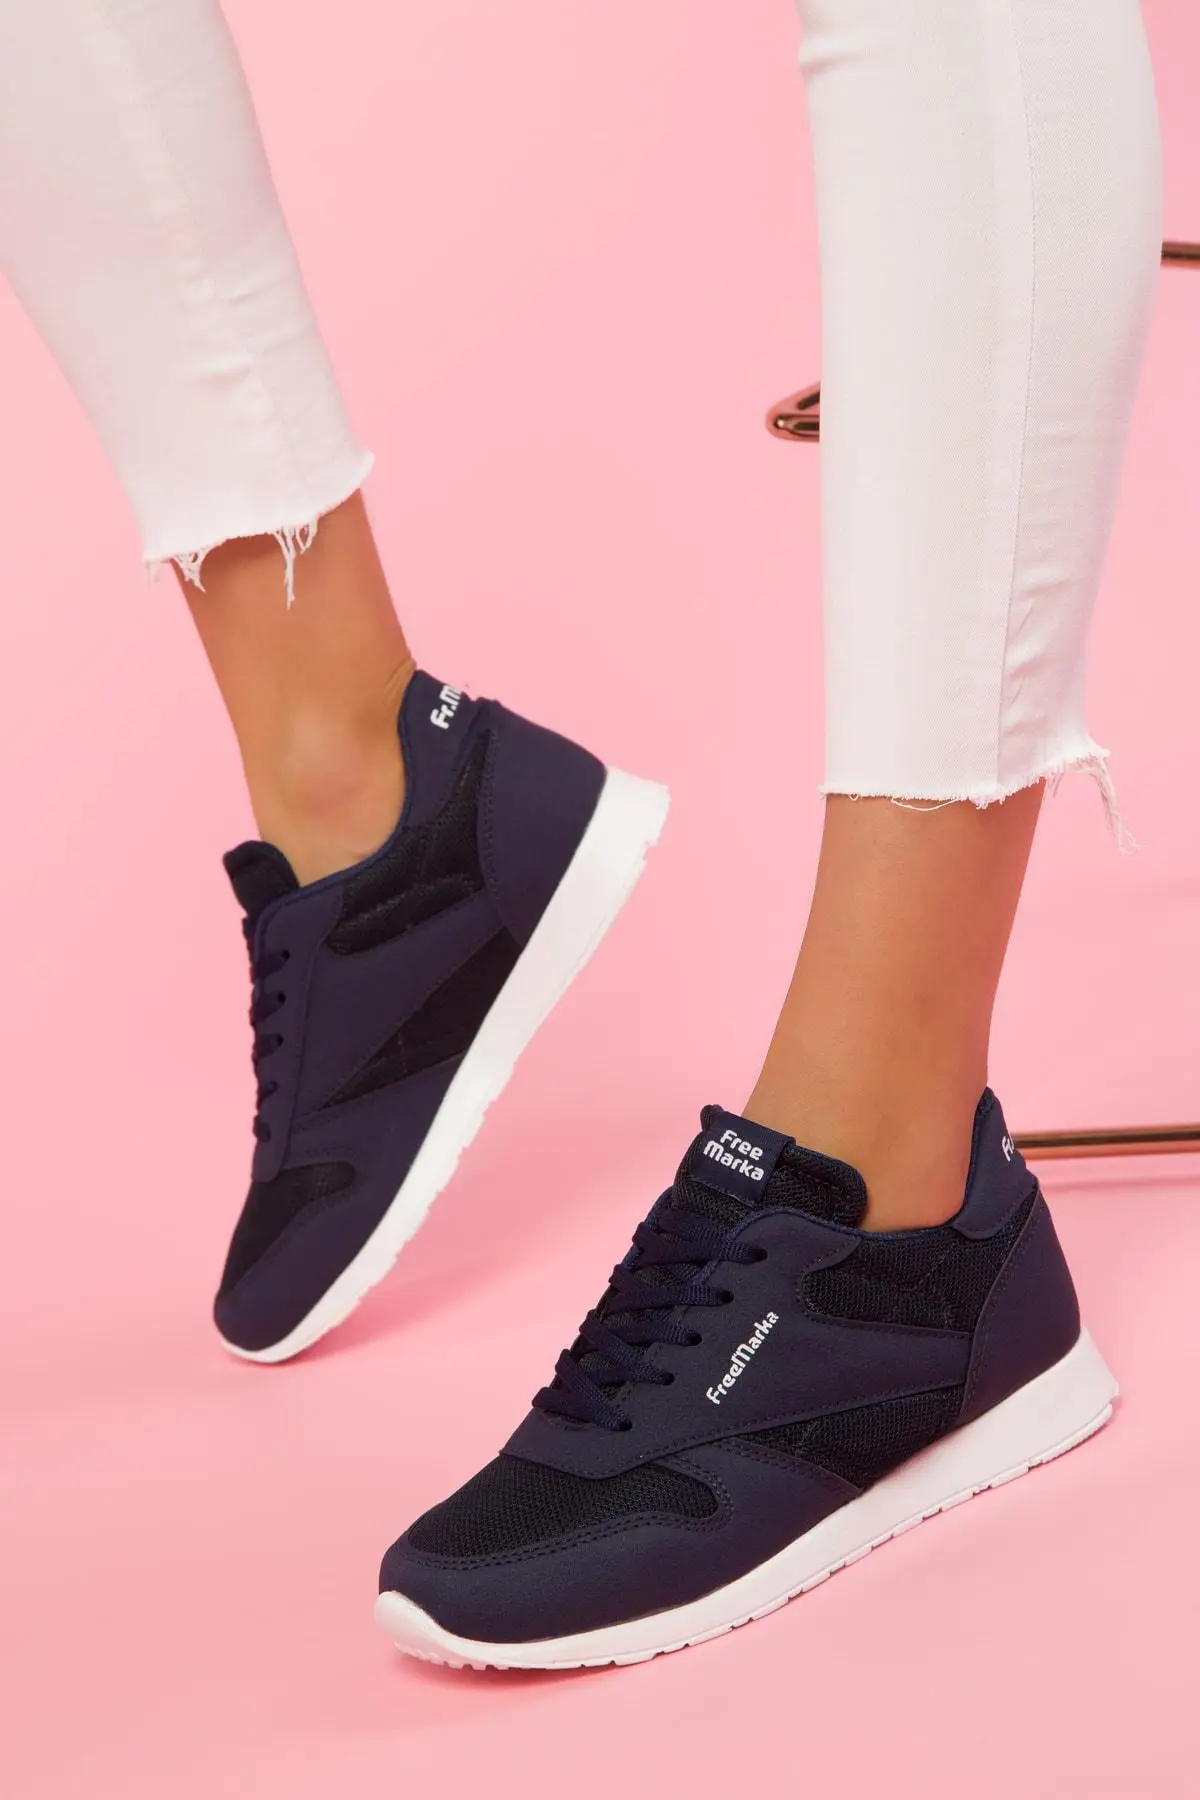 Soho/Темно-Синяя Женская обувь; повседневная спортивная обувь для женщин; летняя спортивная обувь на платформе со шнуровкой; 13503